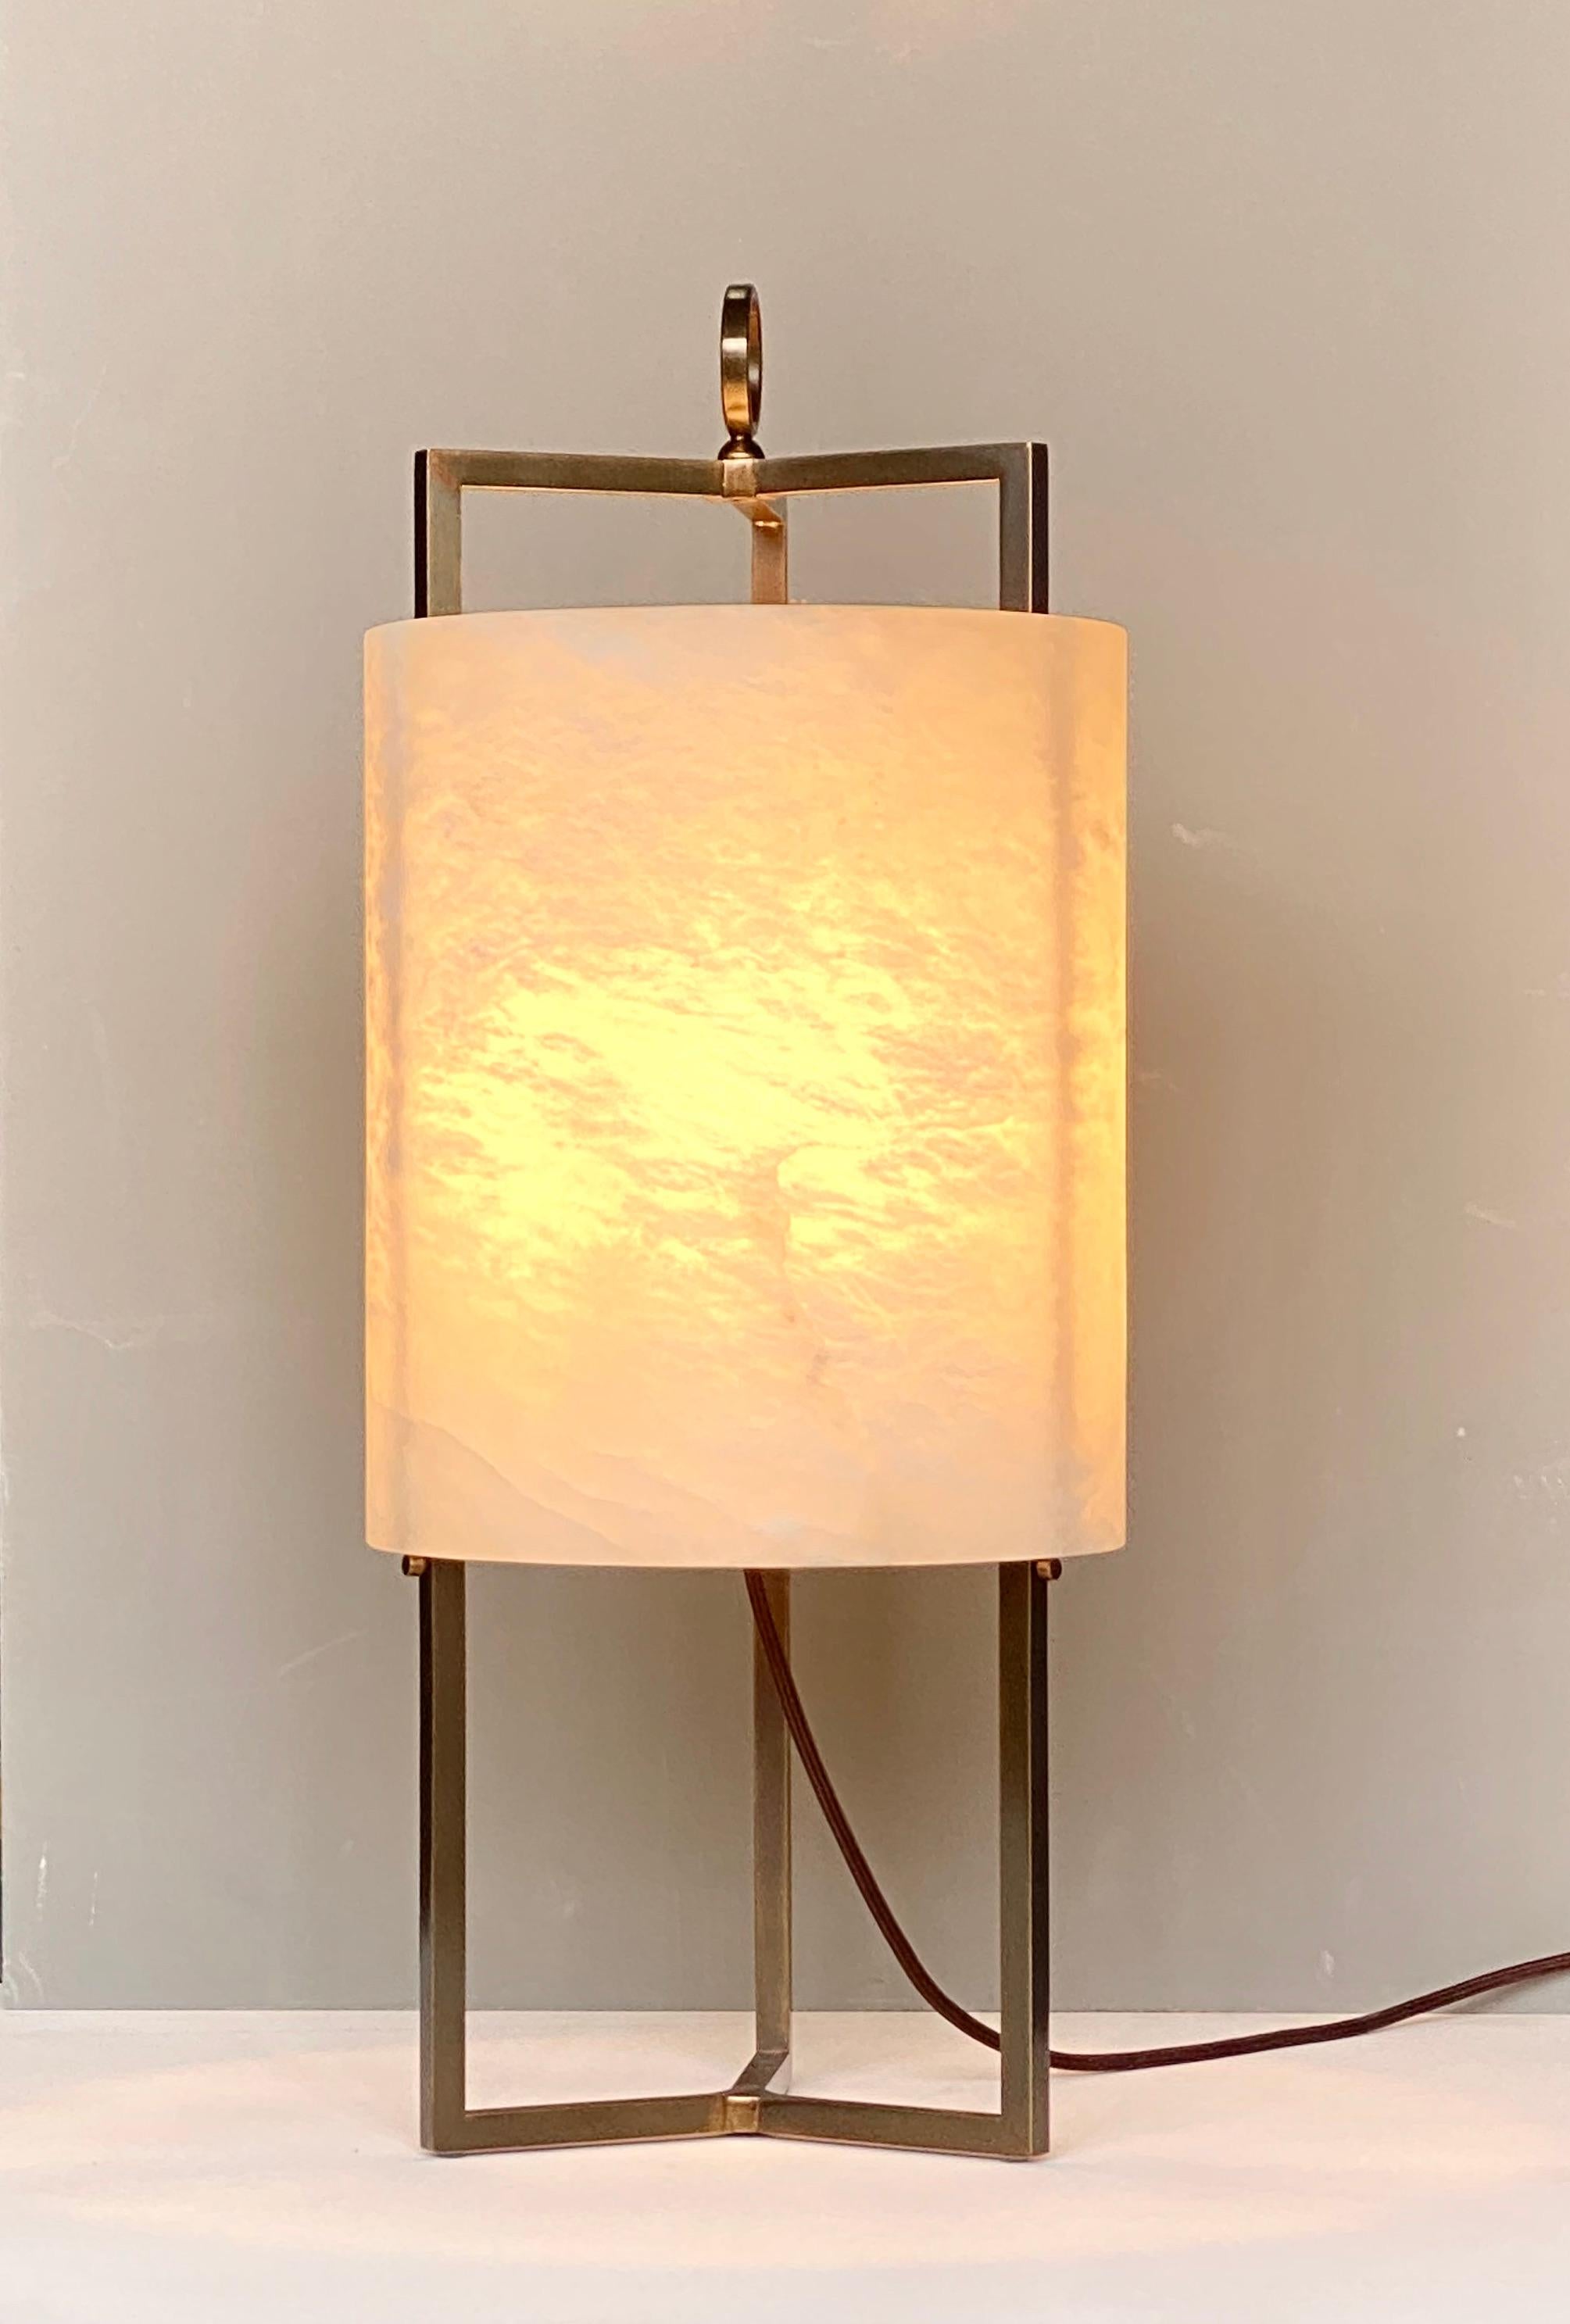 La réinterprétation de la lanterne classique que vous décrivez est un design magnifique et unique. L'utilisation d'une structure en laiton à trois tiges pour soutenir l'abat-jour cylindrique réalisé à partir d'un bloc d'albâtre massif crée un